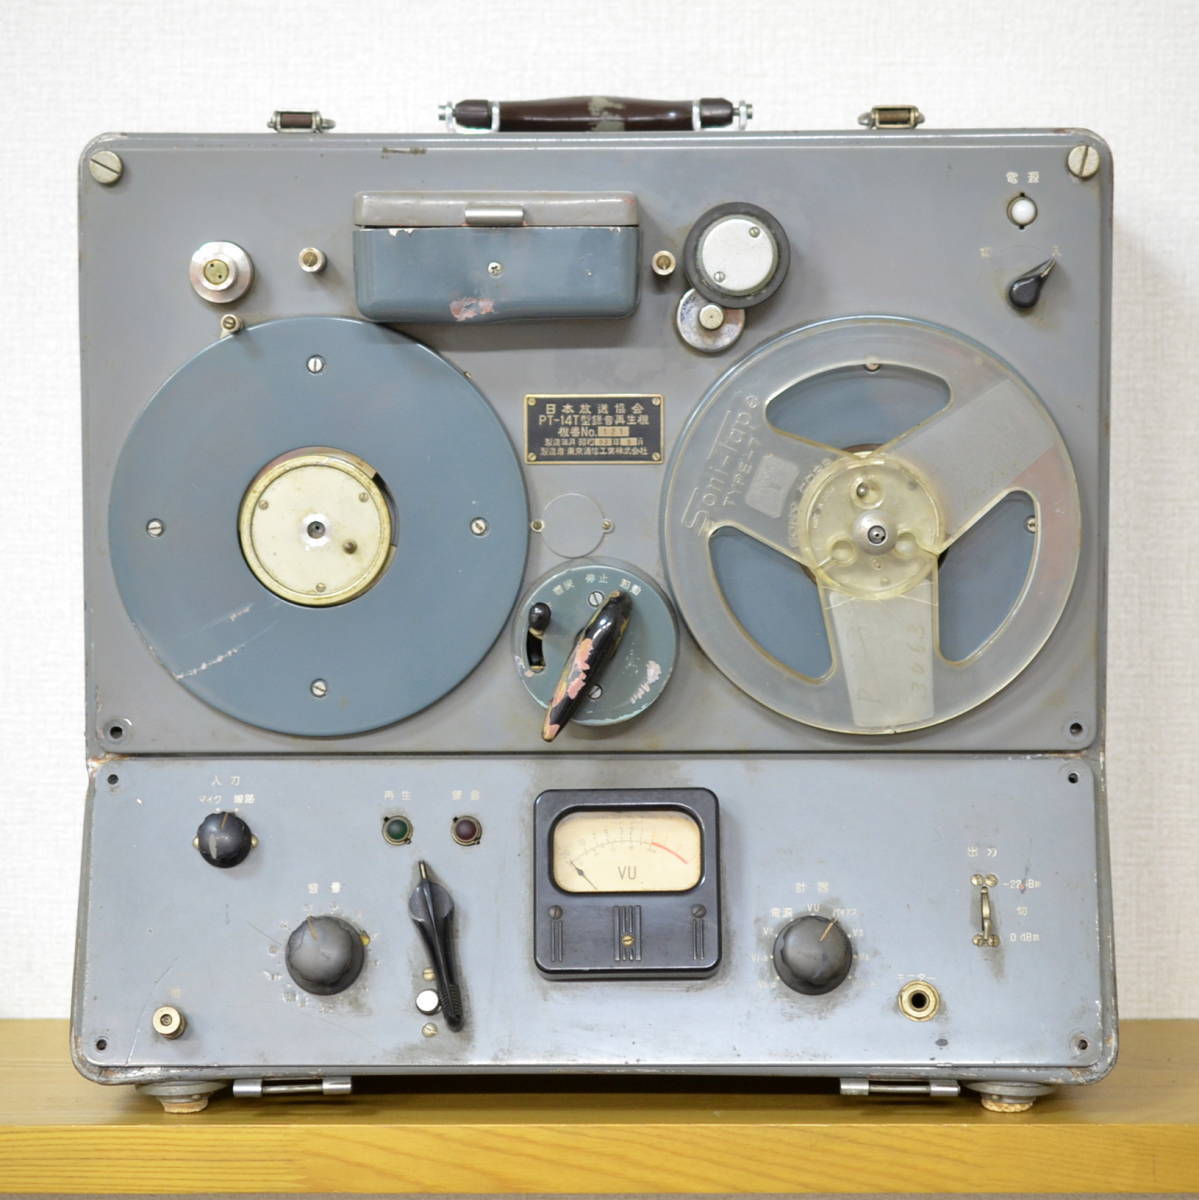 [J]SONY PT-14T вакуумная трубка запись воспроизведение машина 1957 год производства именная техника NHK Tokyo сообщение промышленность акционерное общество Vintage 